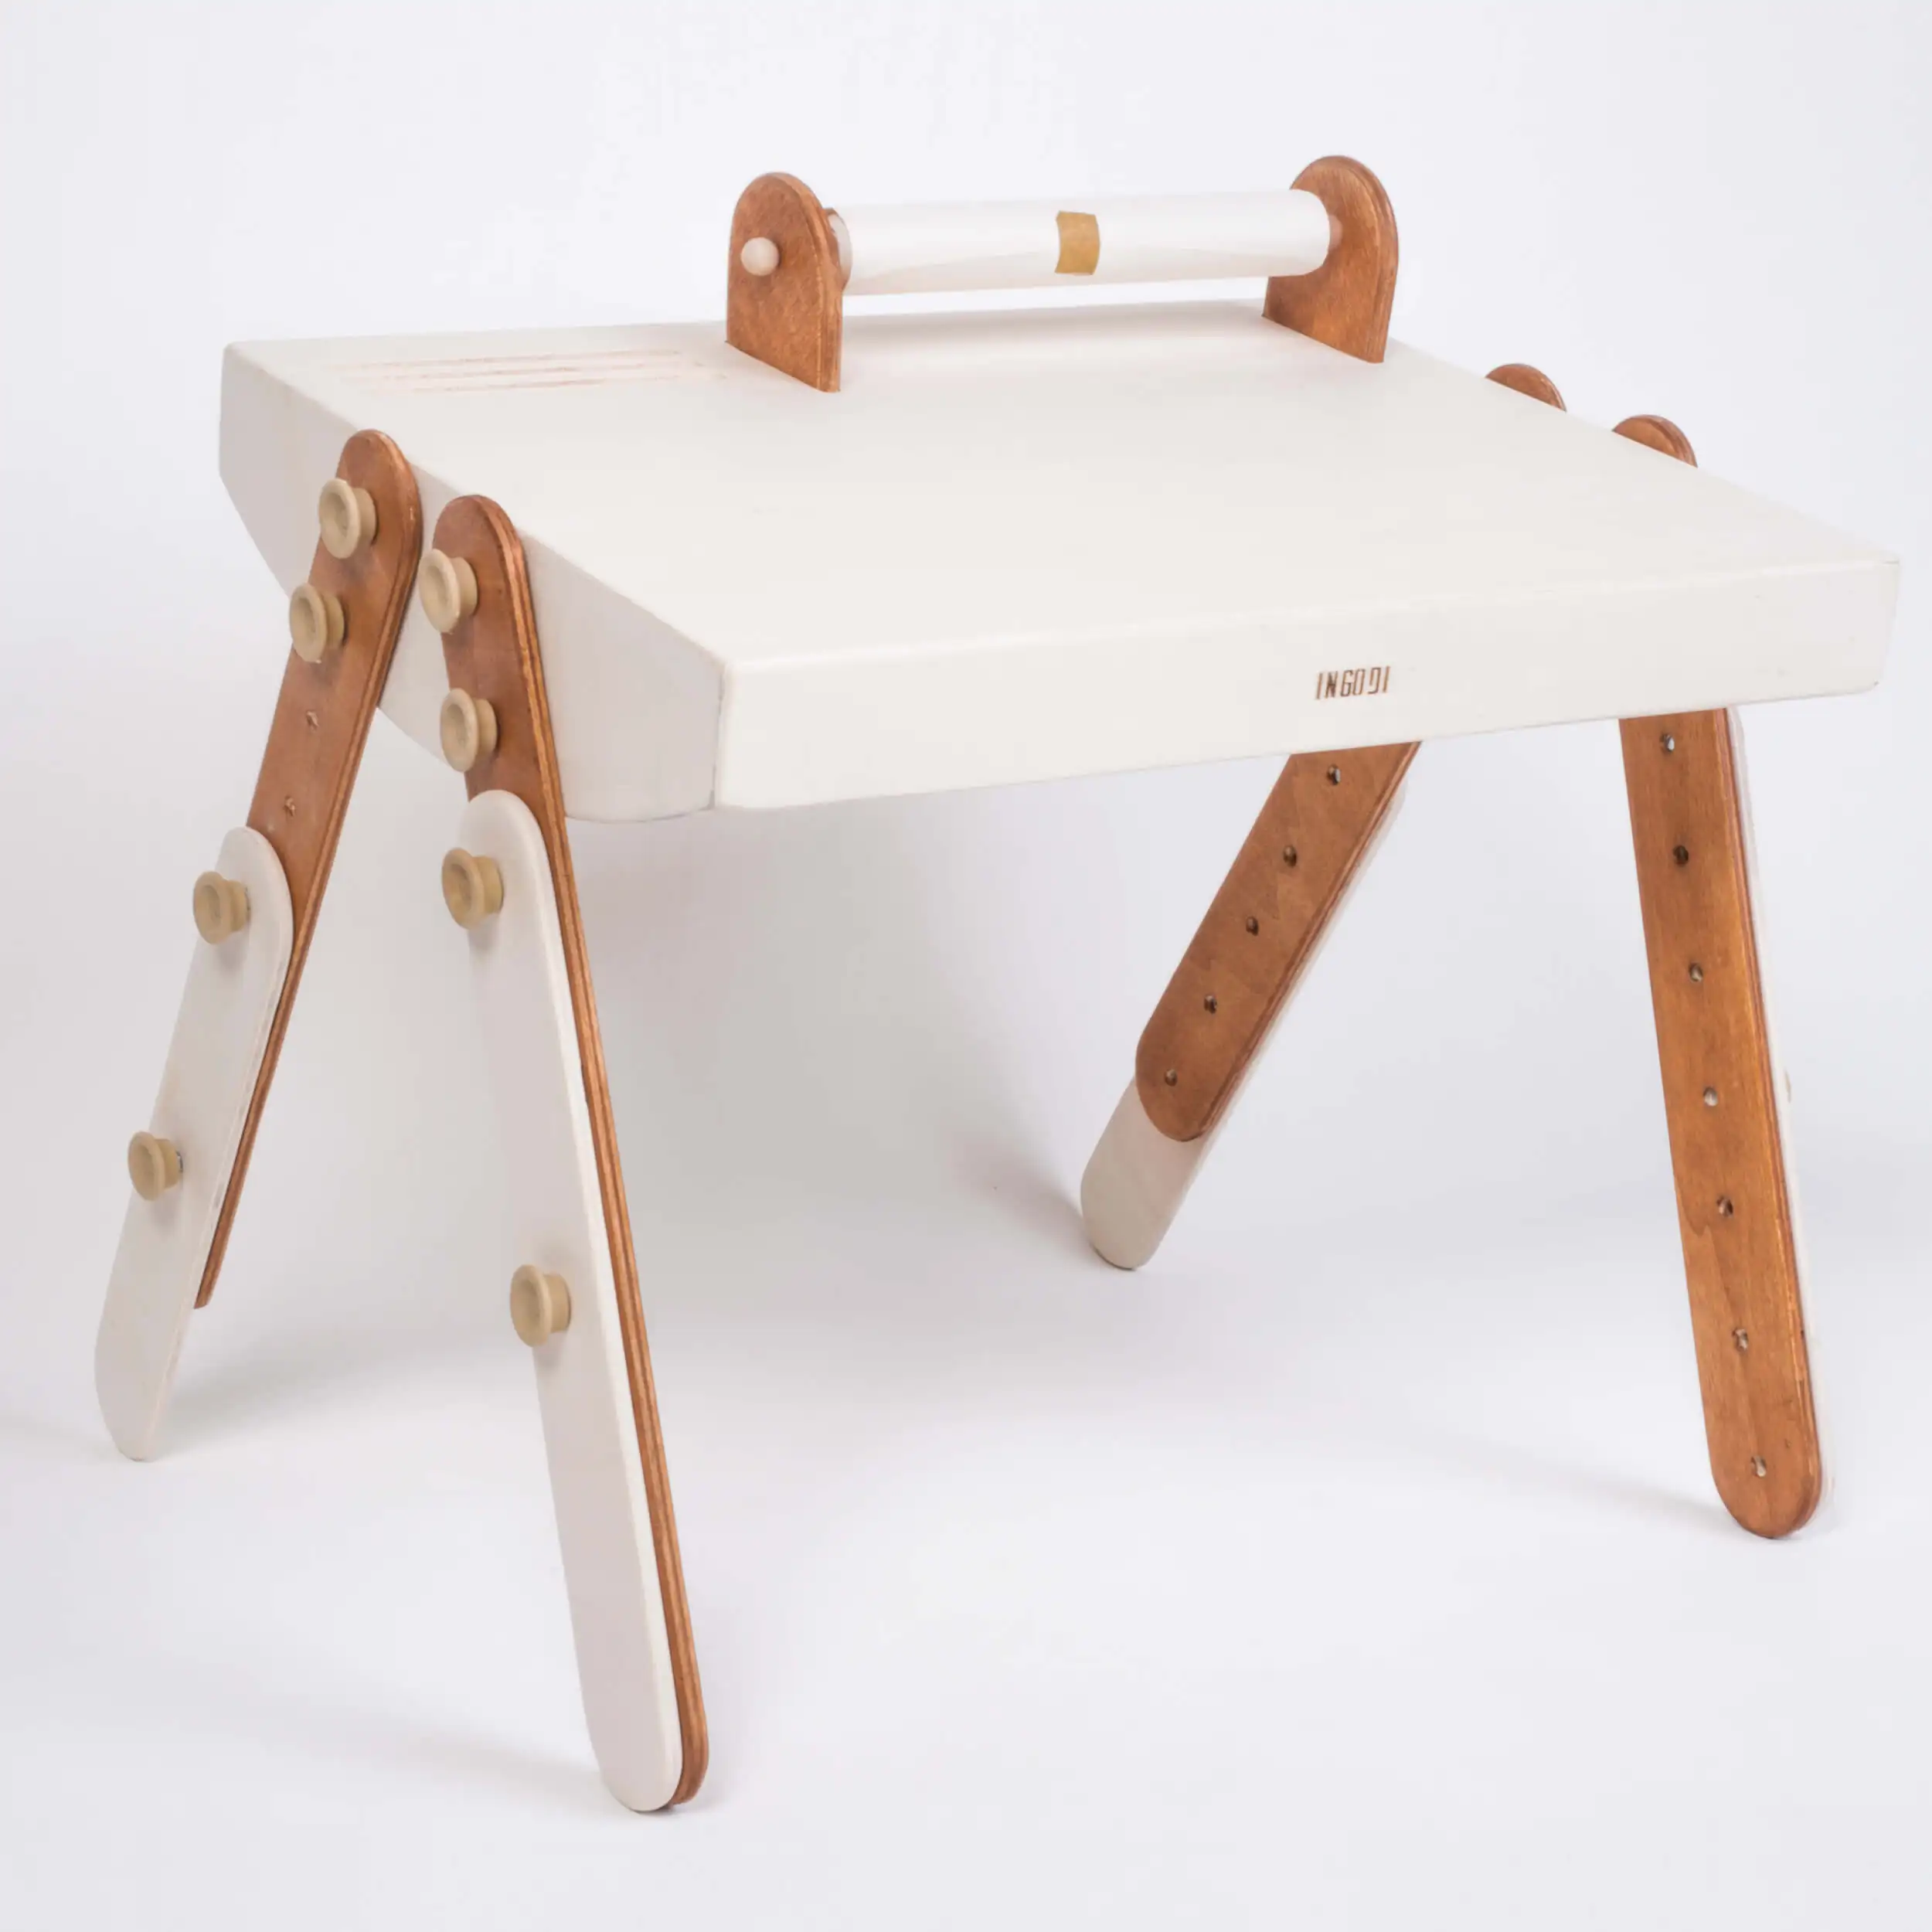 INGODI детский стол для игр, работы и активности из натурального дерева с рулоном бумаги, Монтессори, регулируемый по высоте детский стол